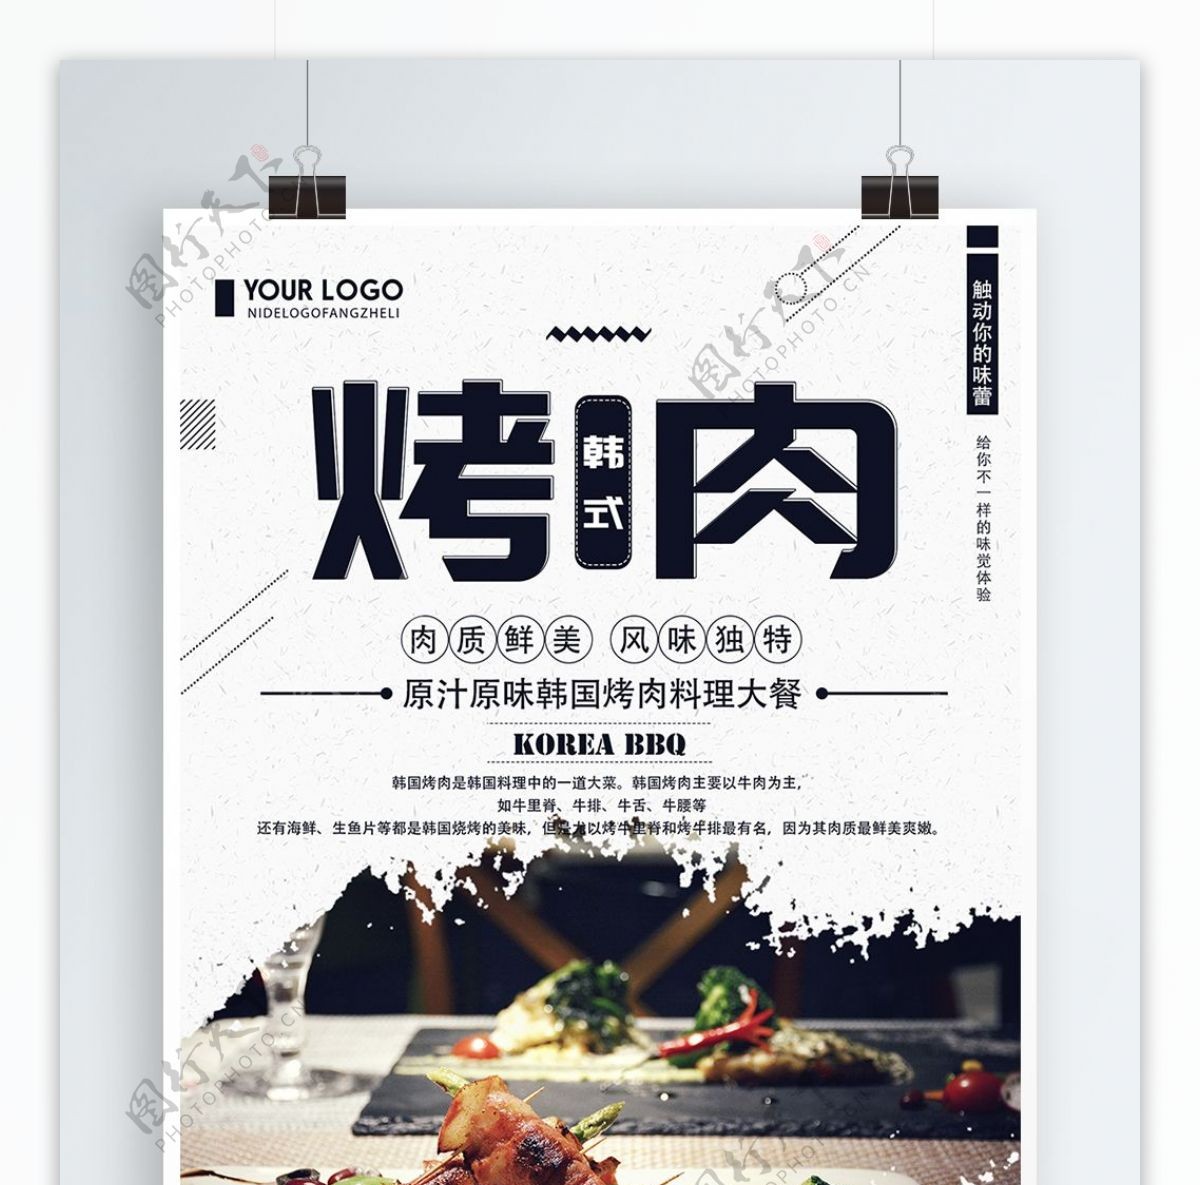 清新简约韩式烤肉美食宣传海报